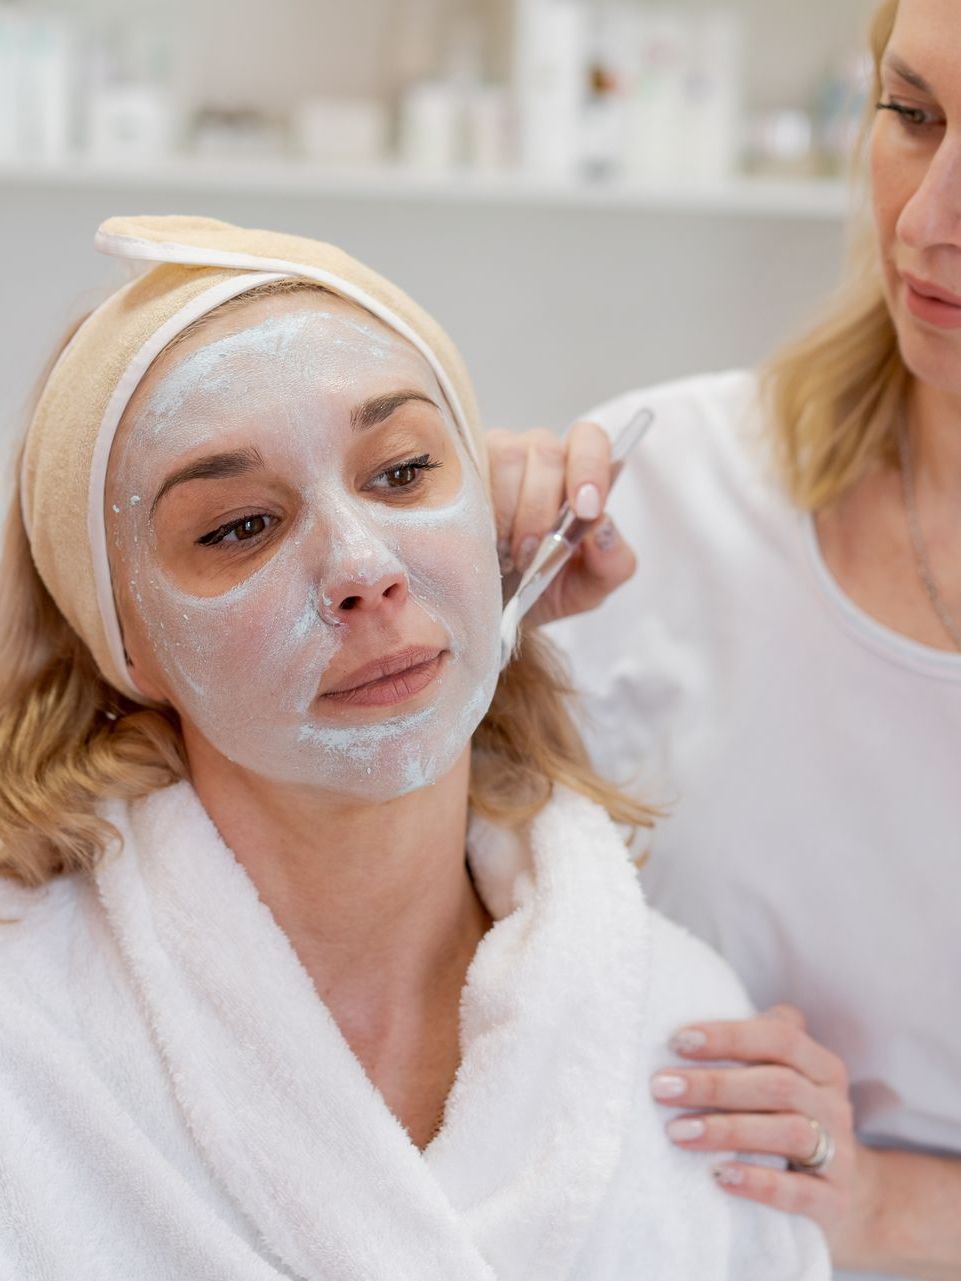 facial peeling mask beauty spa